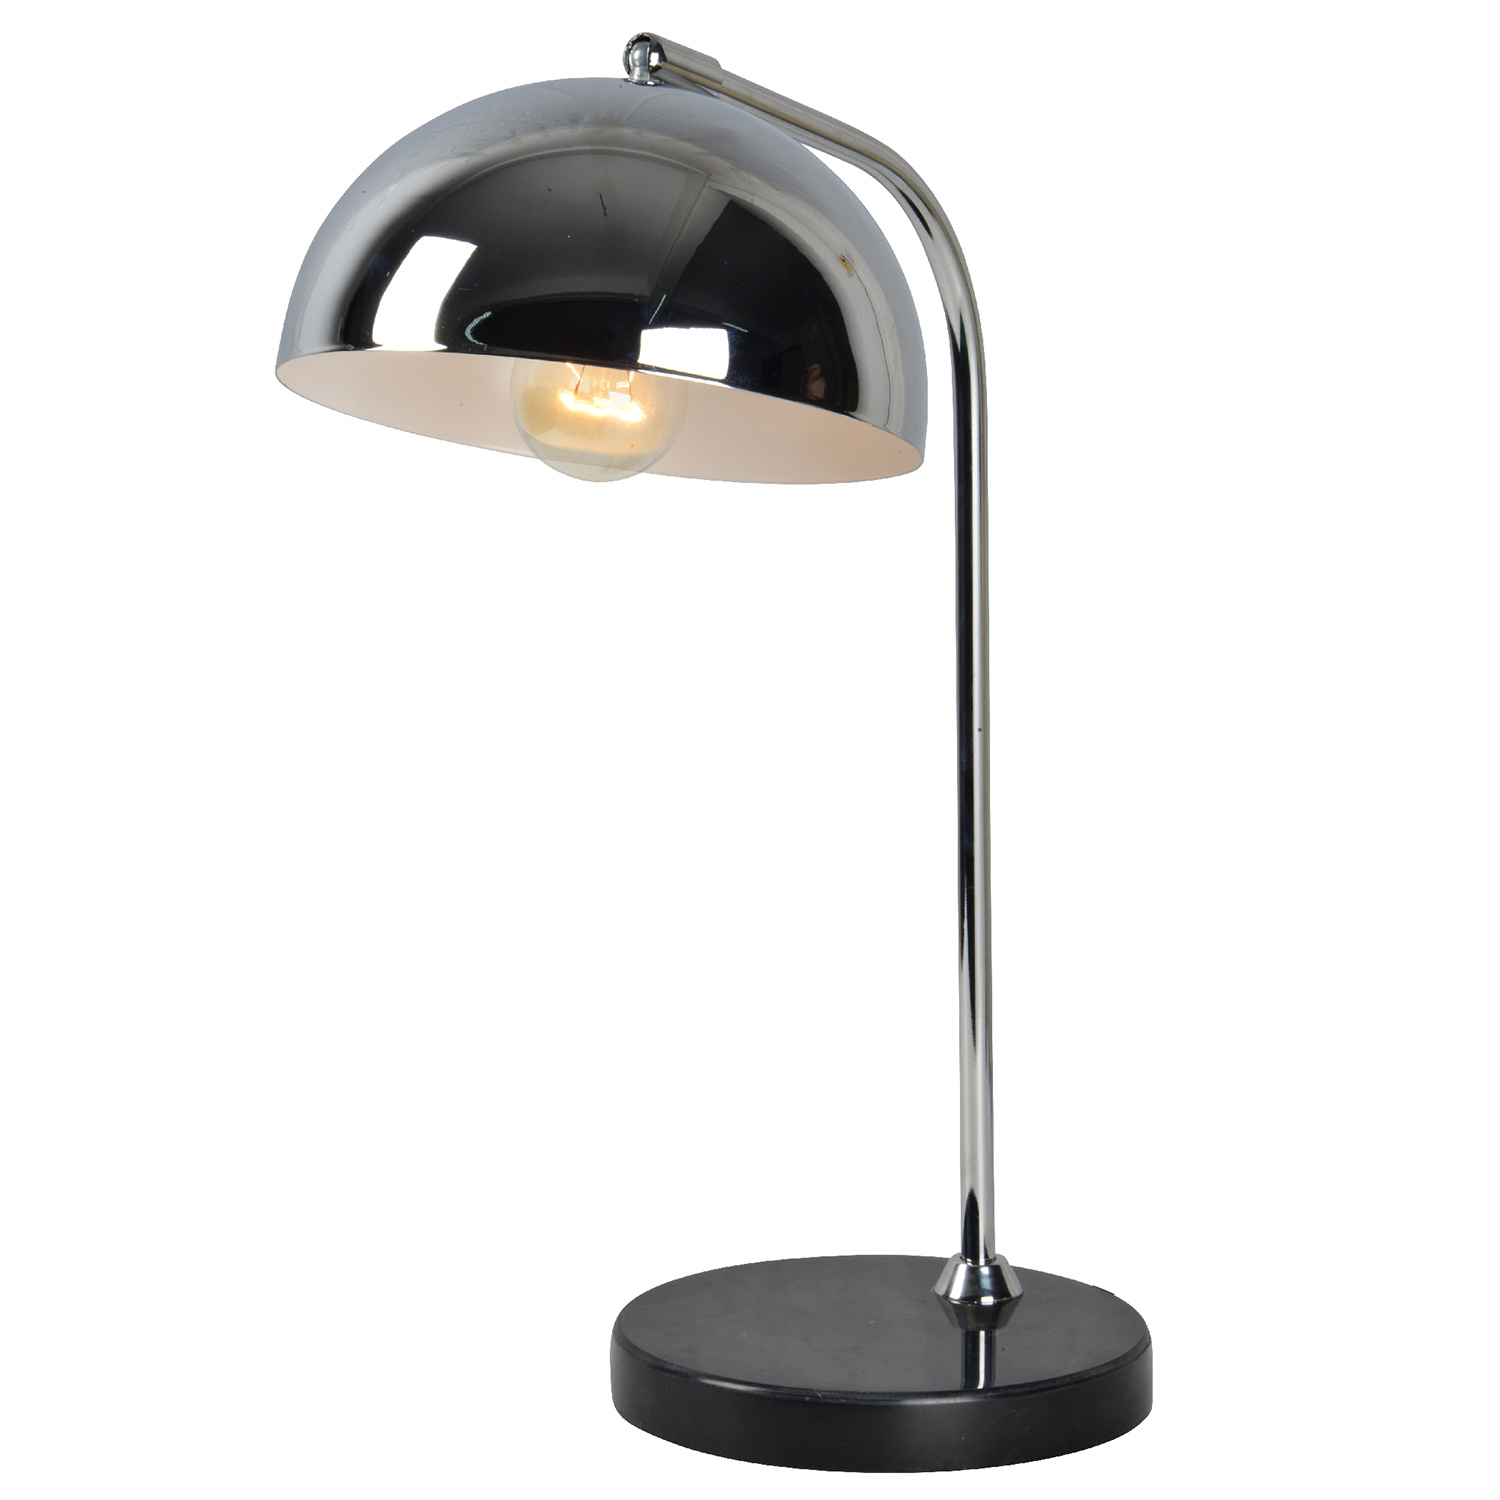 Ren-Wil Marlowe Table Lamp - Black